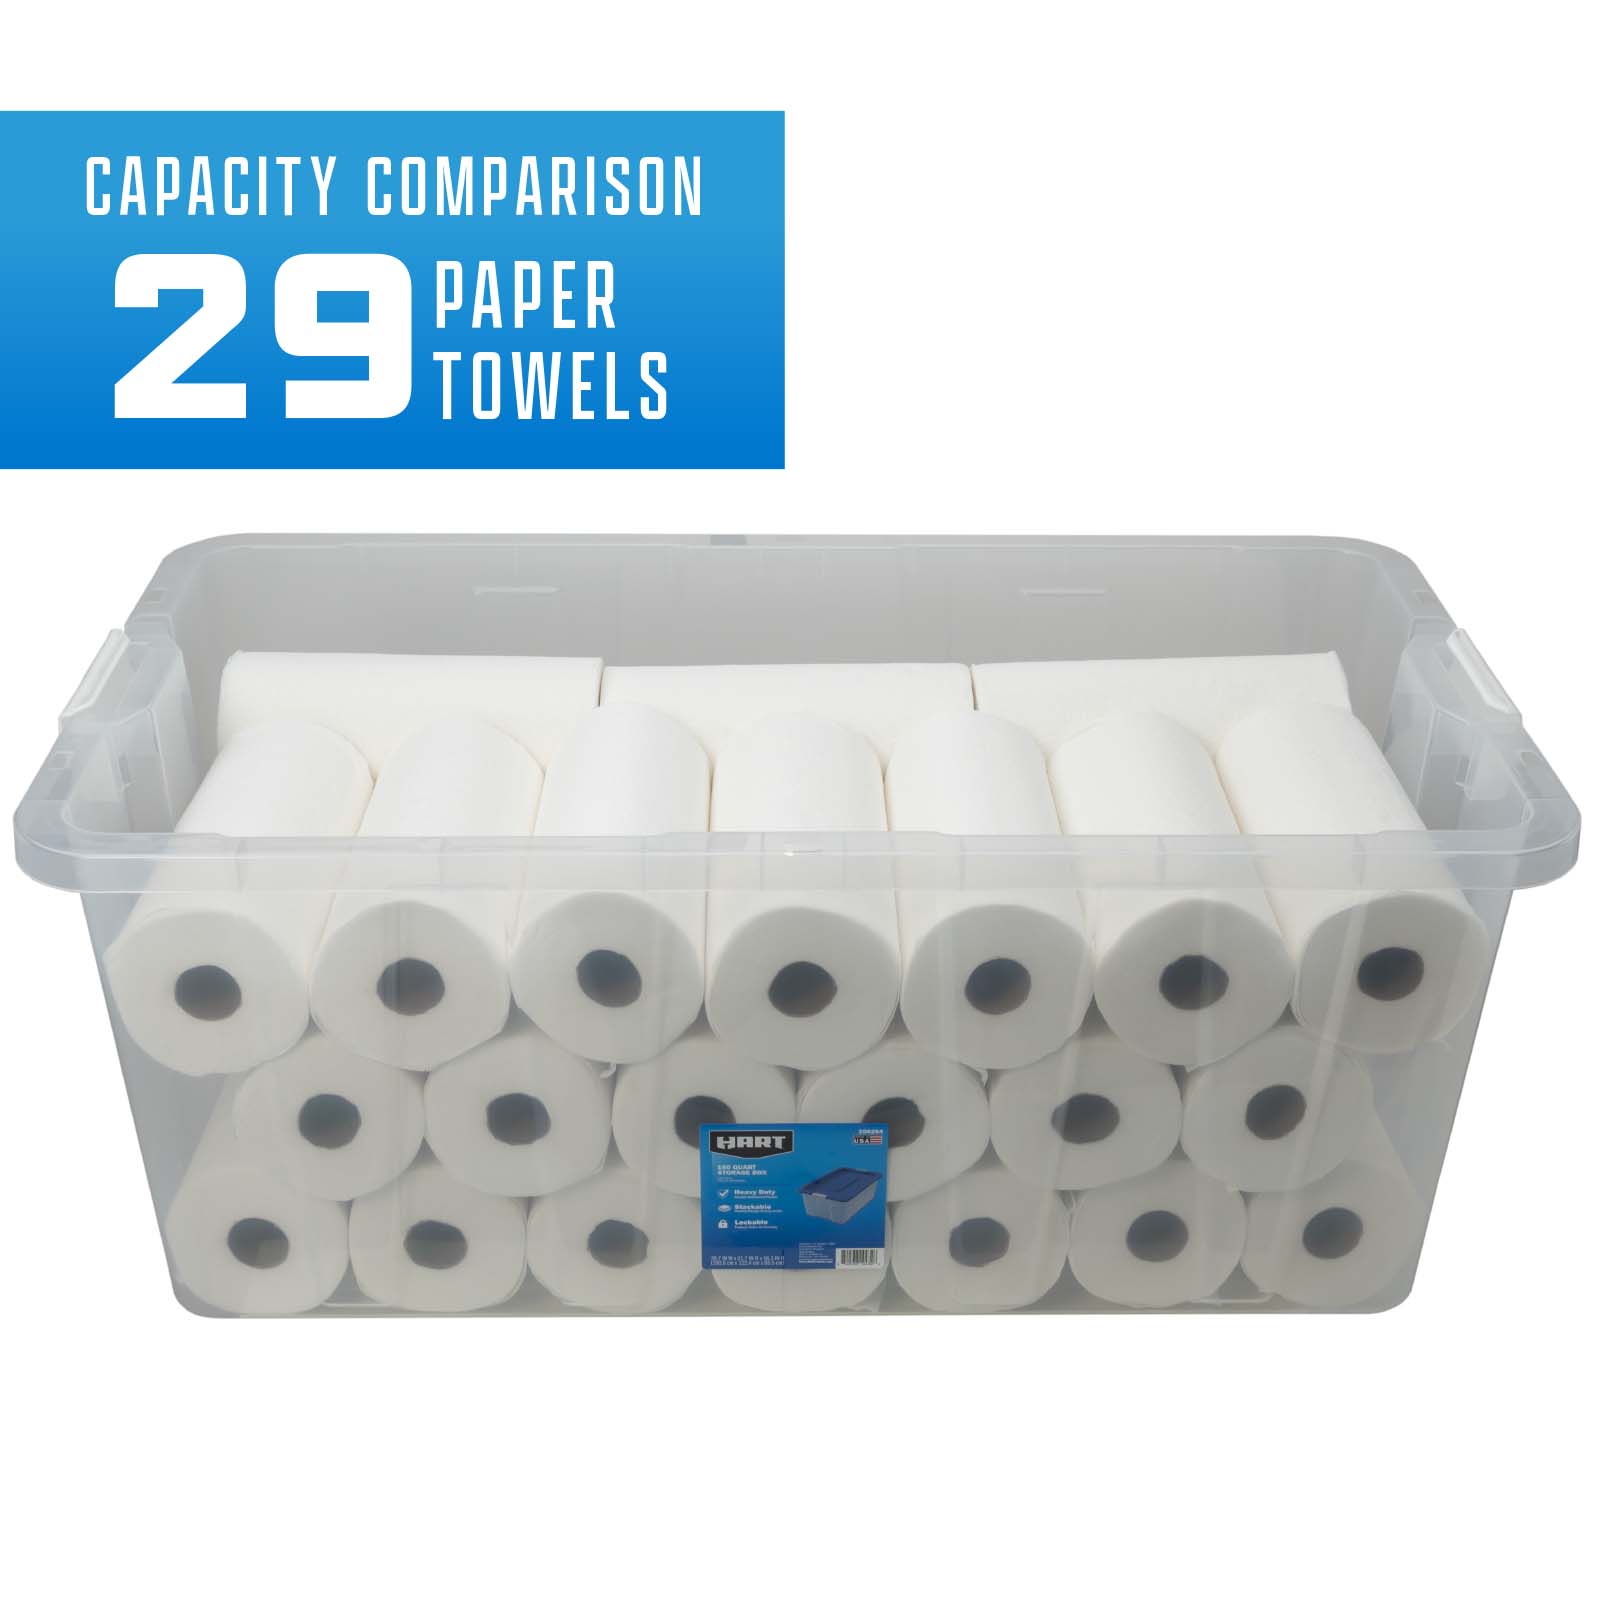 Capacity comparison 29 paper towels